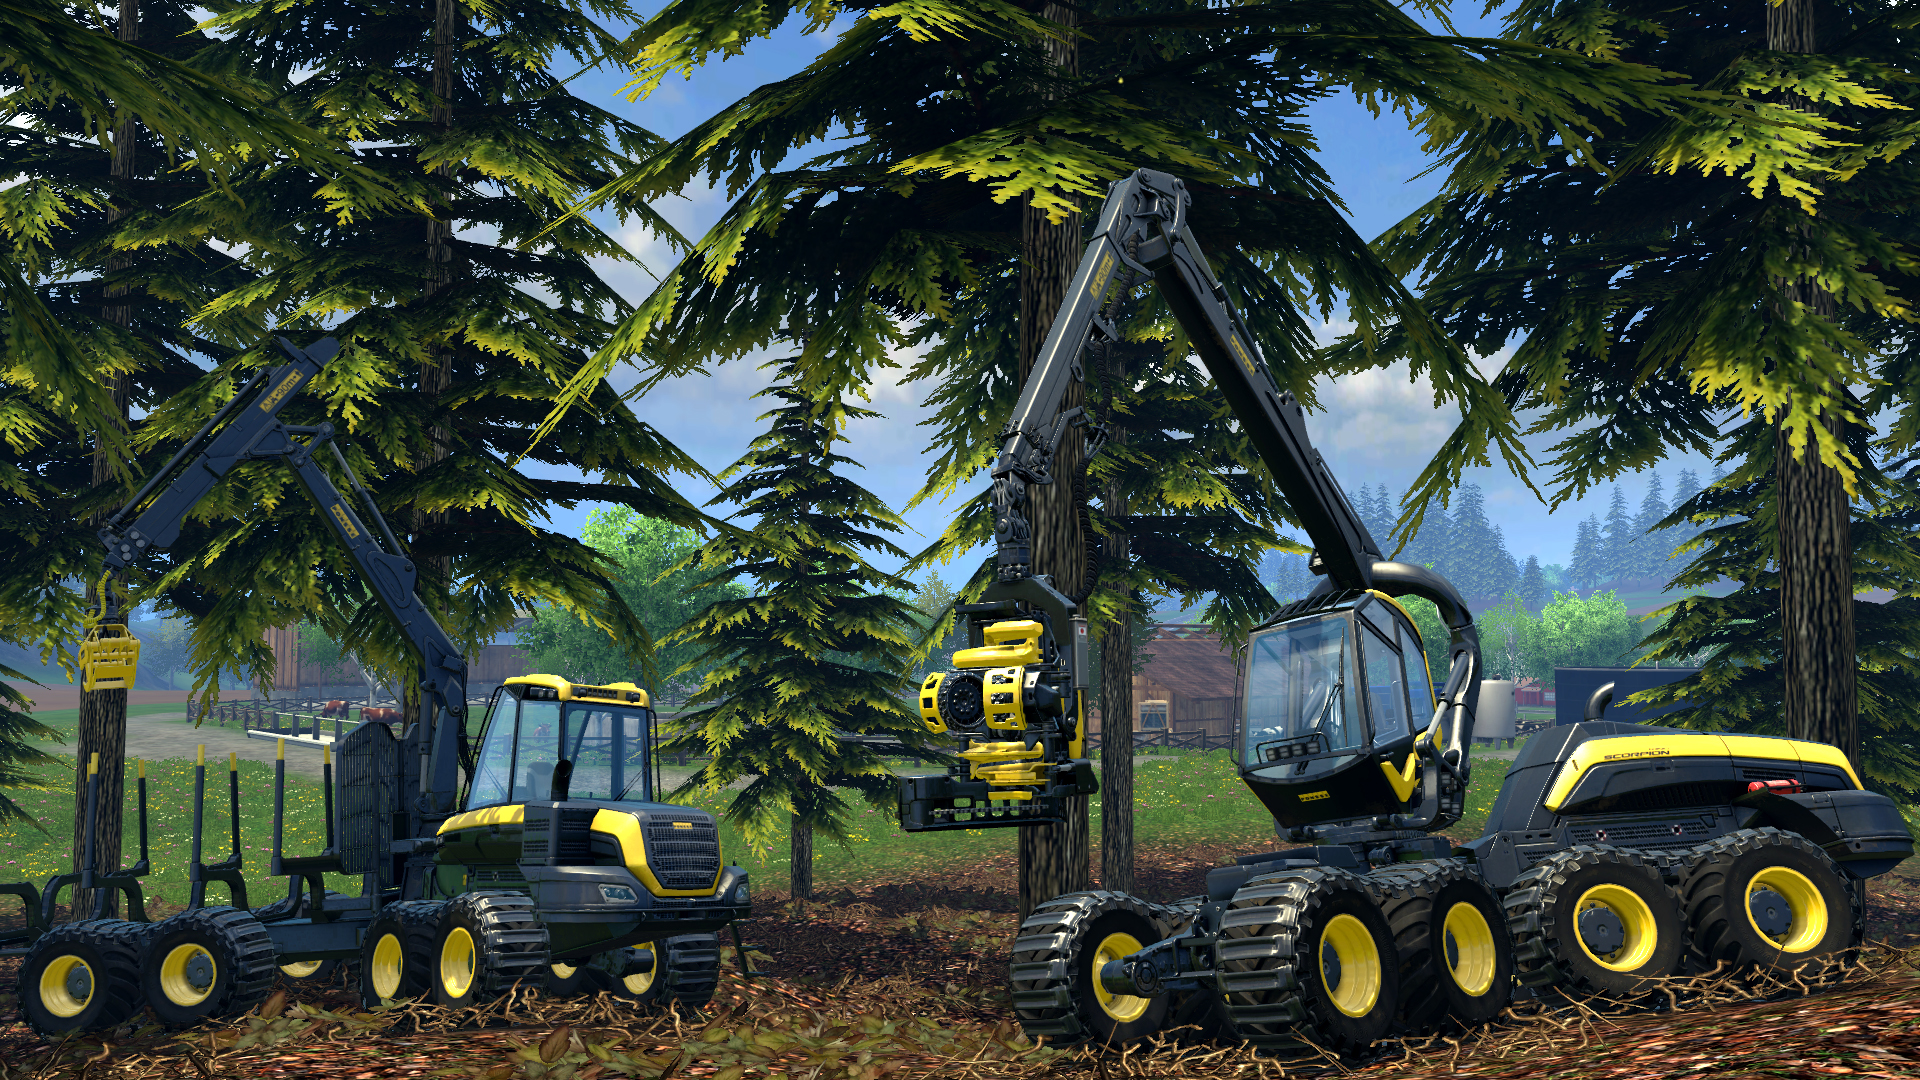 farming simulator 2015 download free full version mac